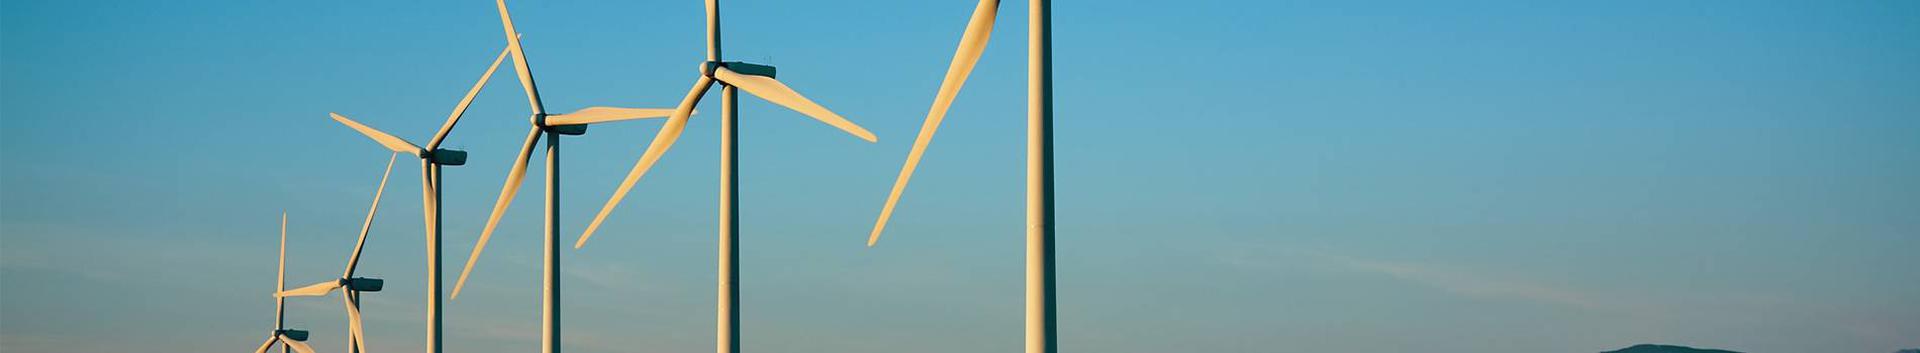 Suurim mainega ettevõte TUULEPEALNE MAA OÜ, maineskoor 10580, aktiivseid äriseoseid 8. Tegutseb peamiselt valdkonnas: Elektrienergia tootmine tuuleenergiast.